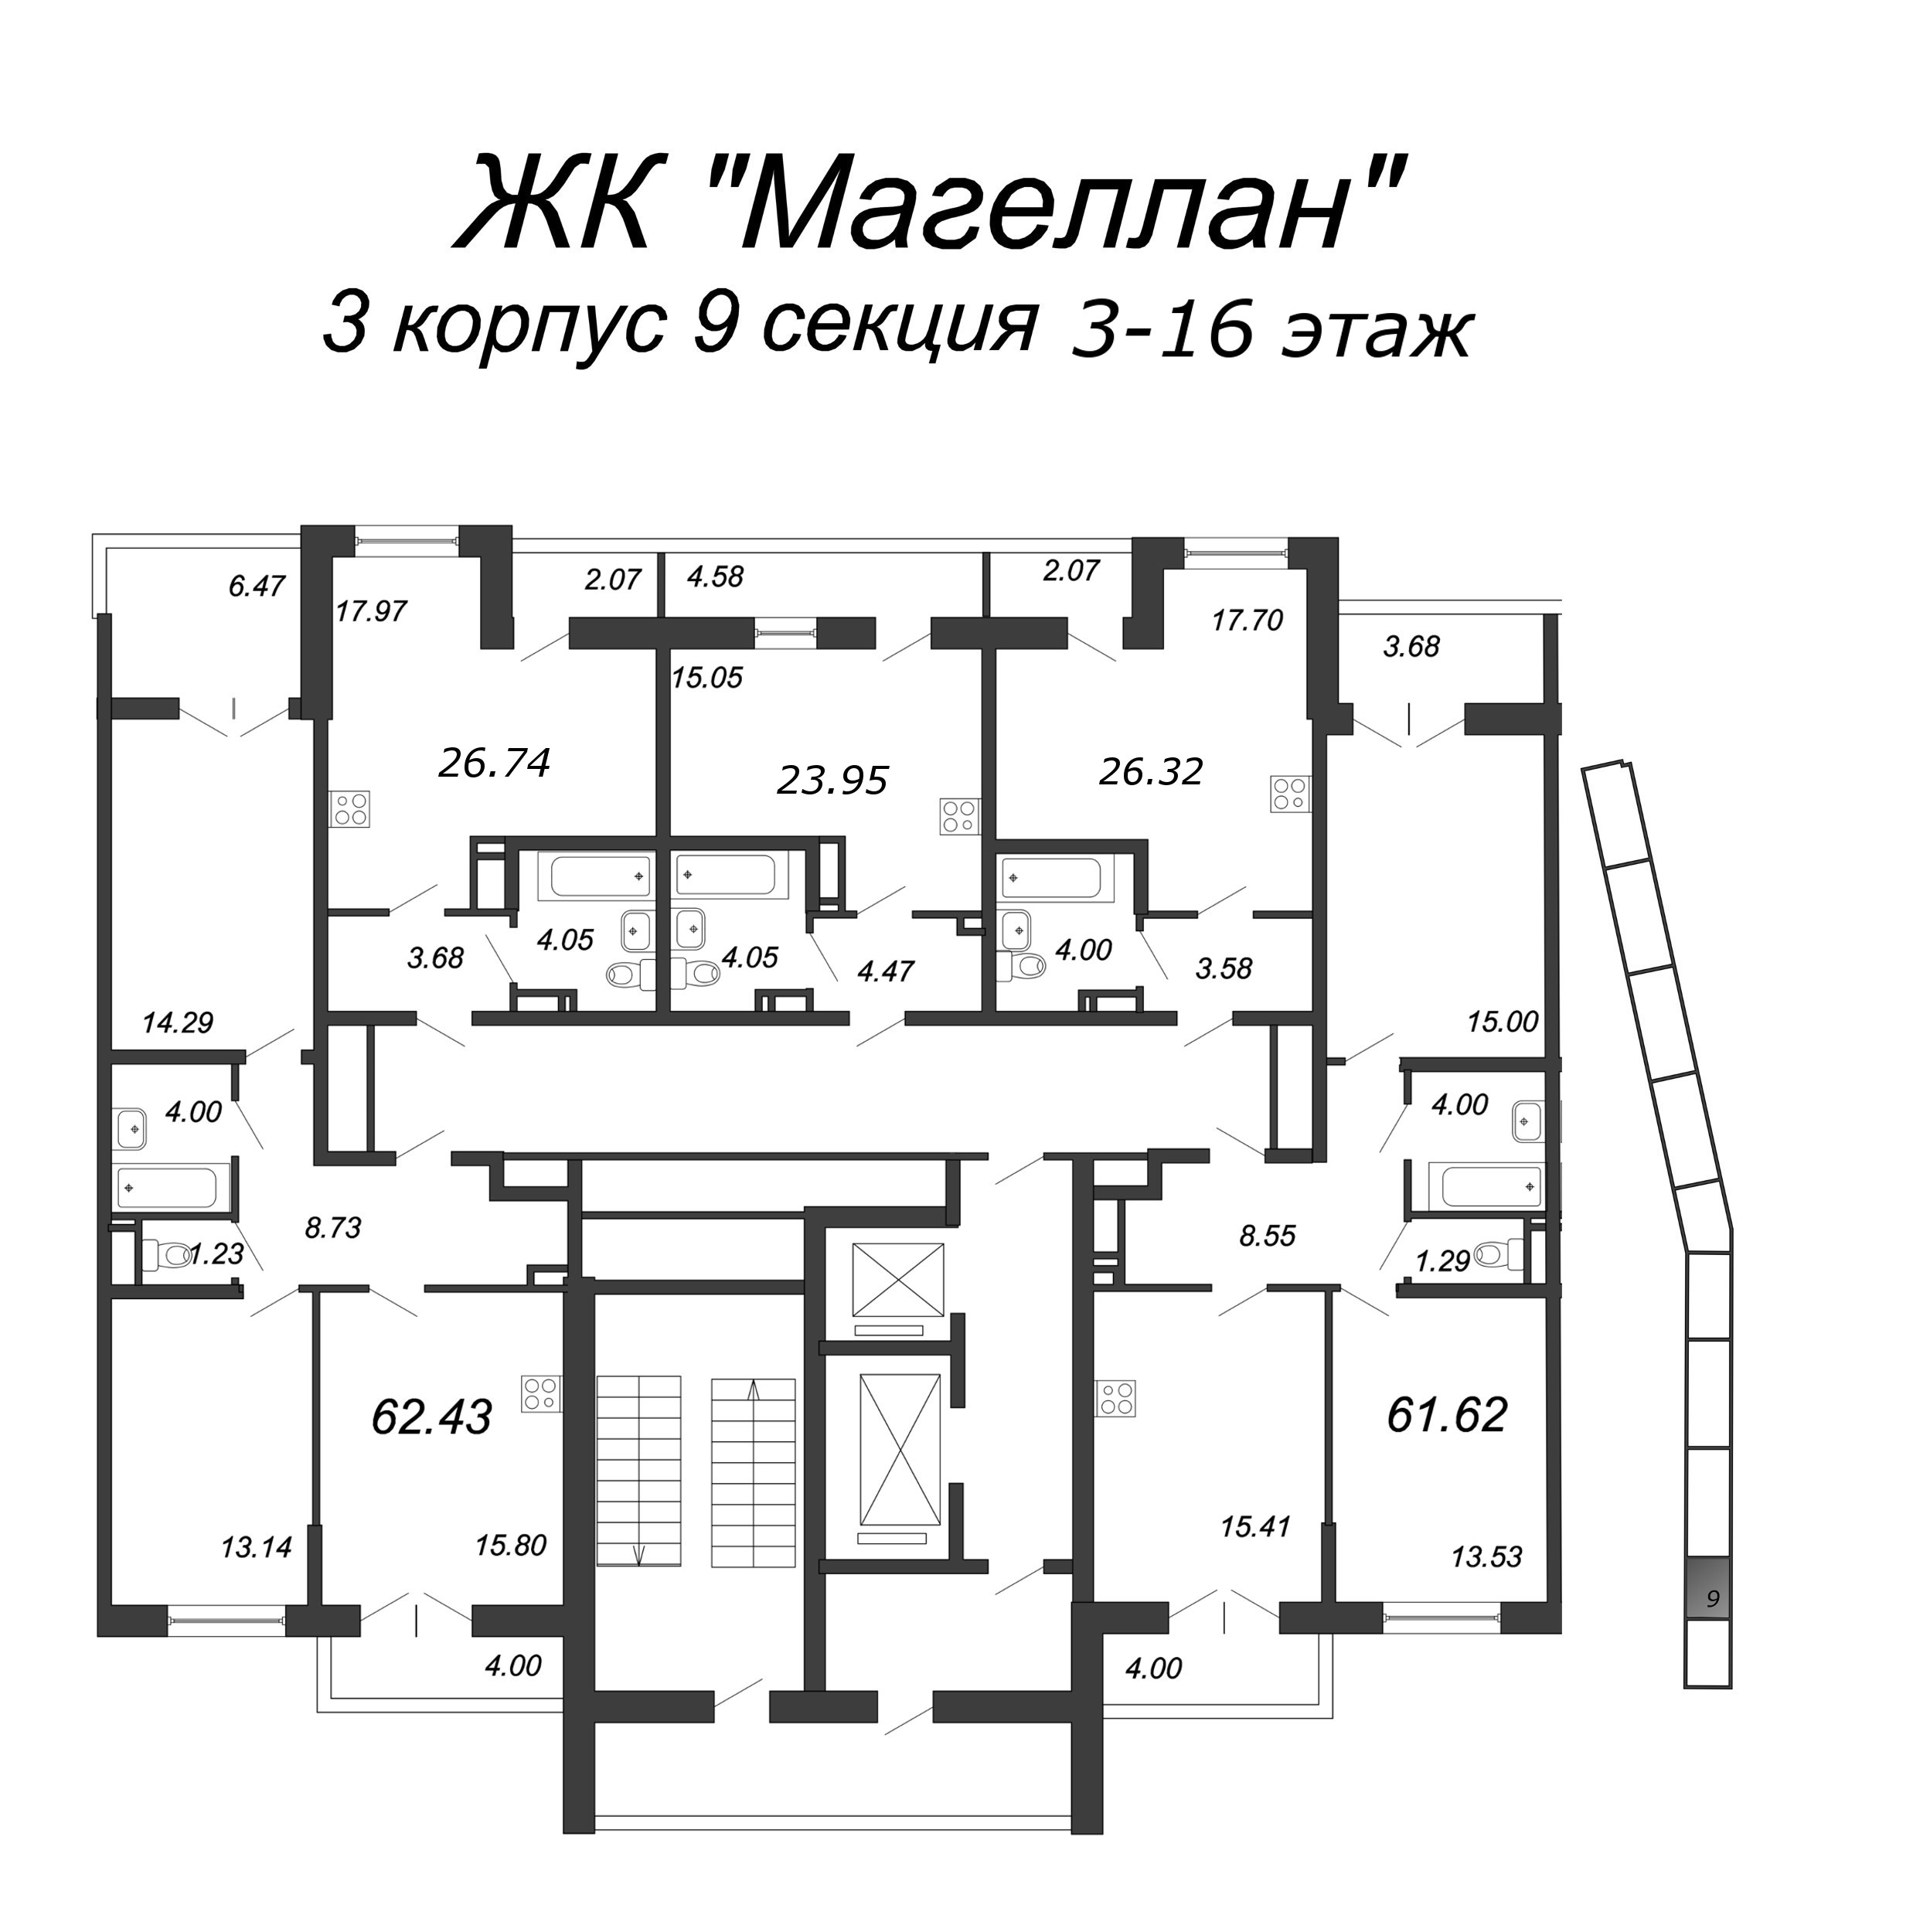 Квартира-студия, 27.2 м² в ЖК "Магеллан" - планировка этажа